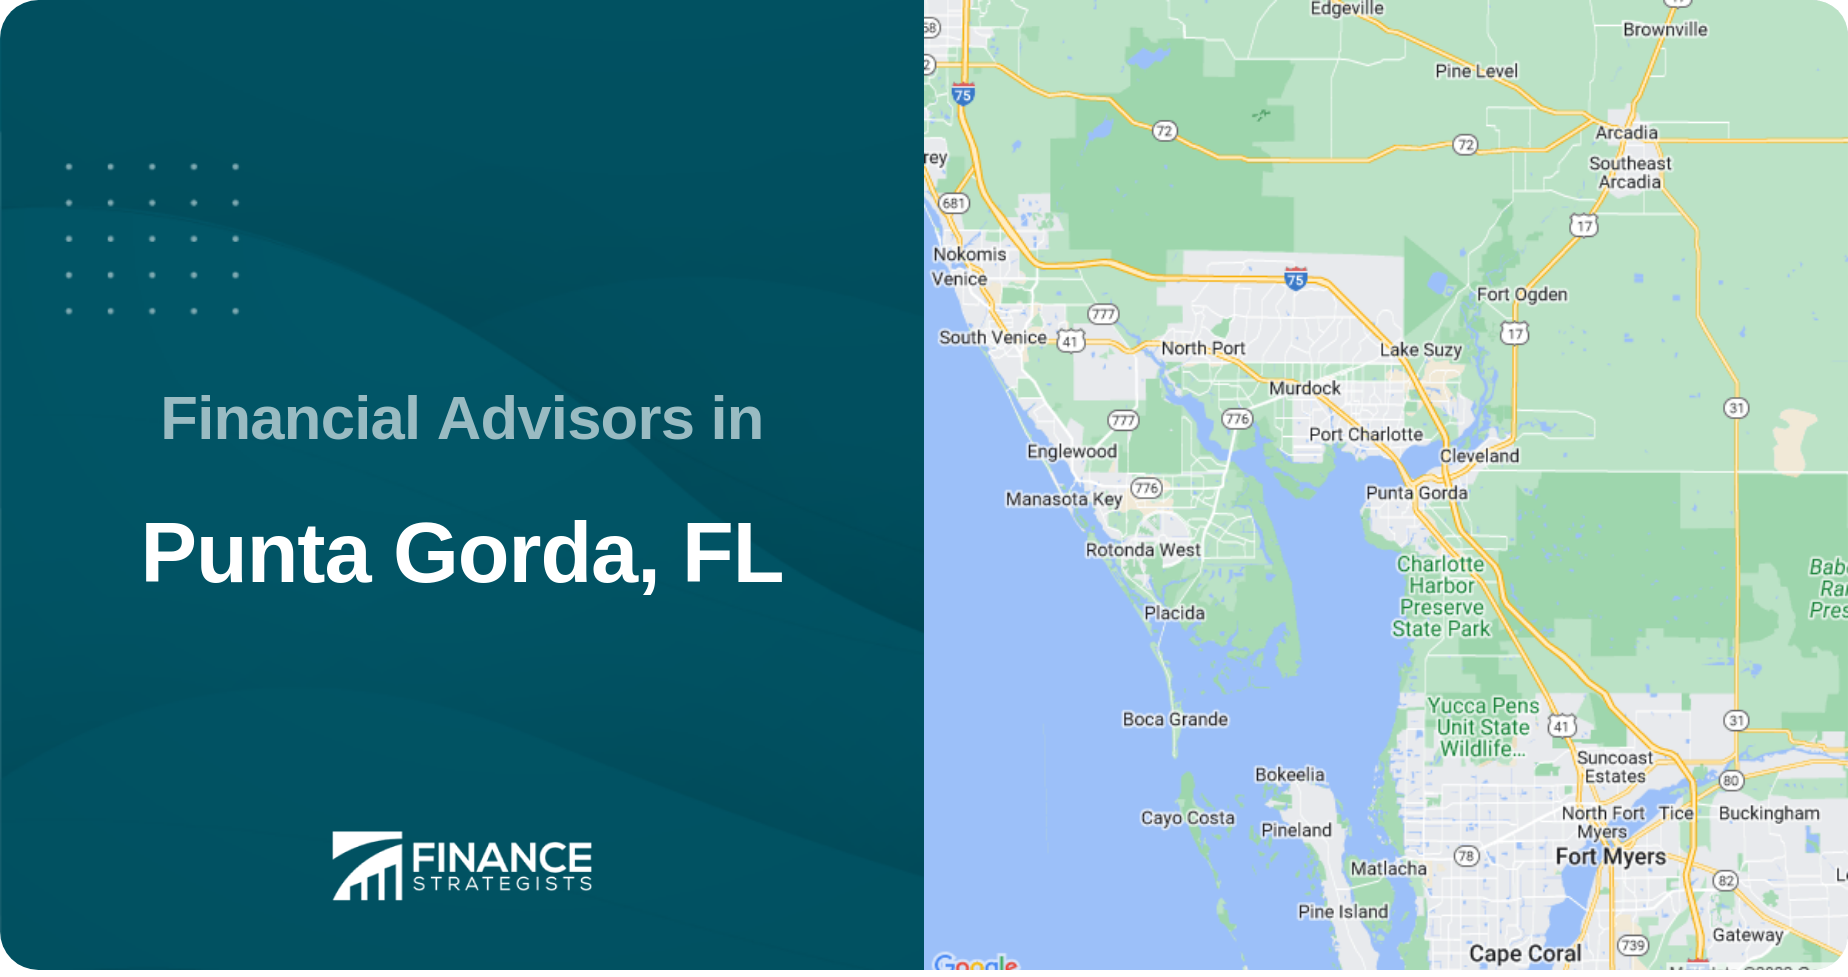 Financial Advisors in Punta Gorda, FL